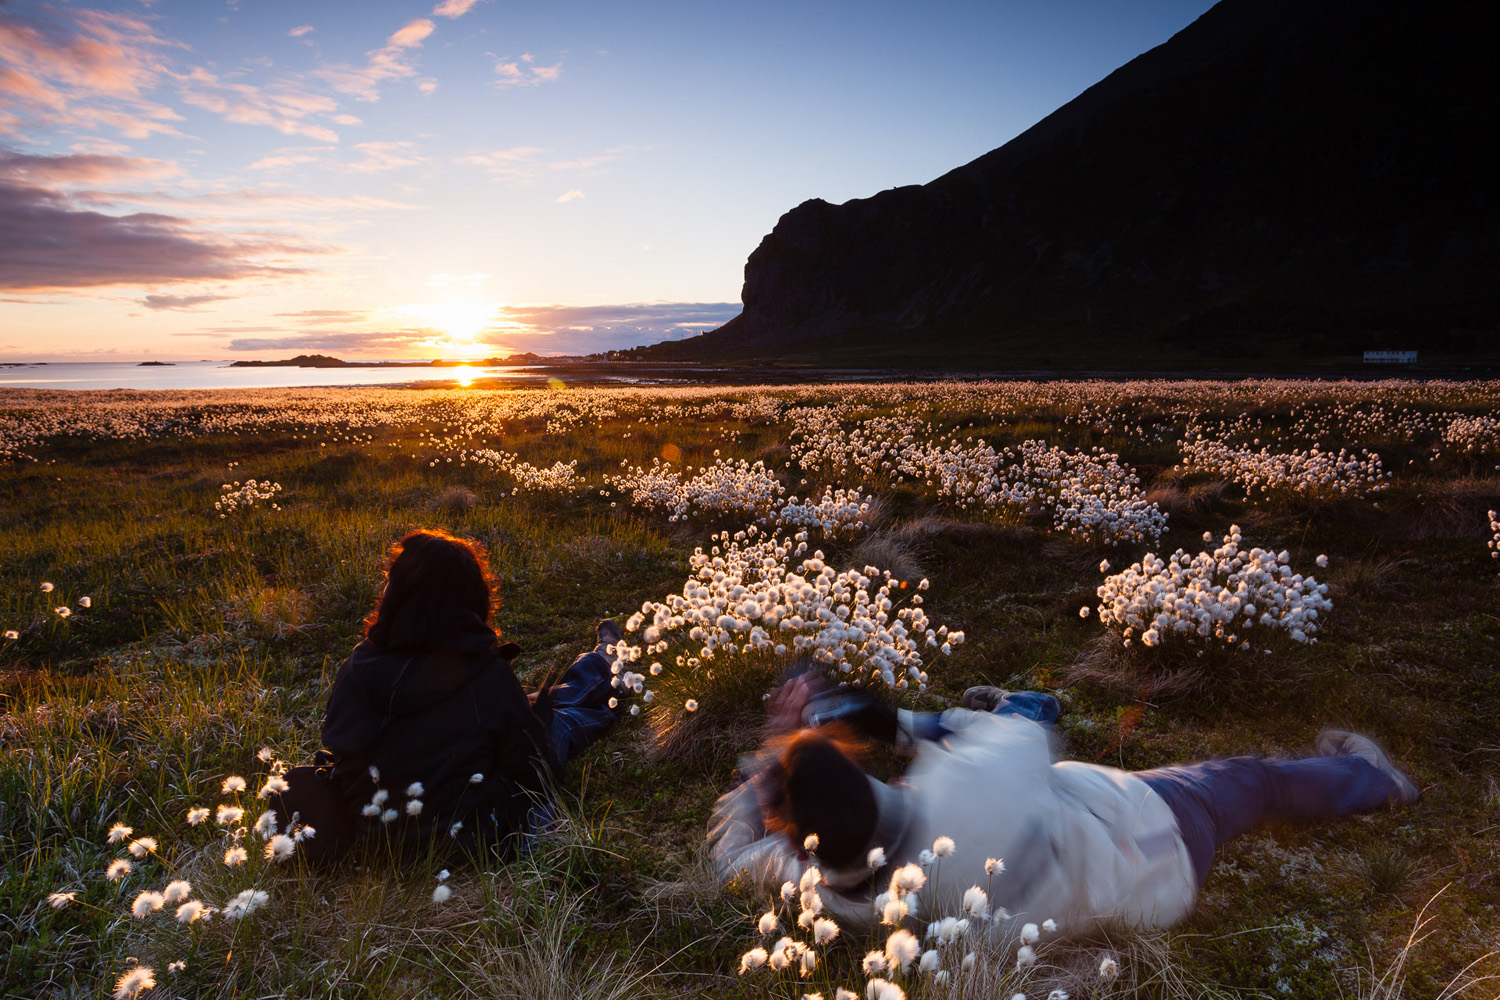 photographes lors d'un voyage photo dans les Lofoten, en Norvège, au milieu des linaigrettes, avec le soleil de minuit. Photographes dureing a photo tour in Lofoten, Norway, in the cottongrass and with the midnight sun